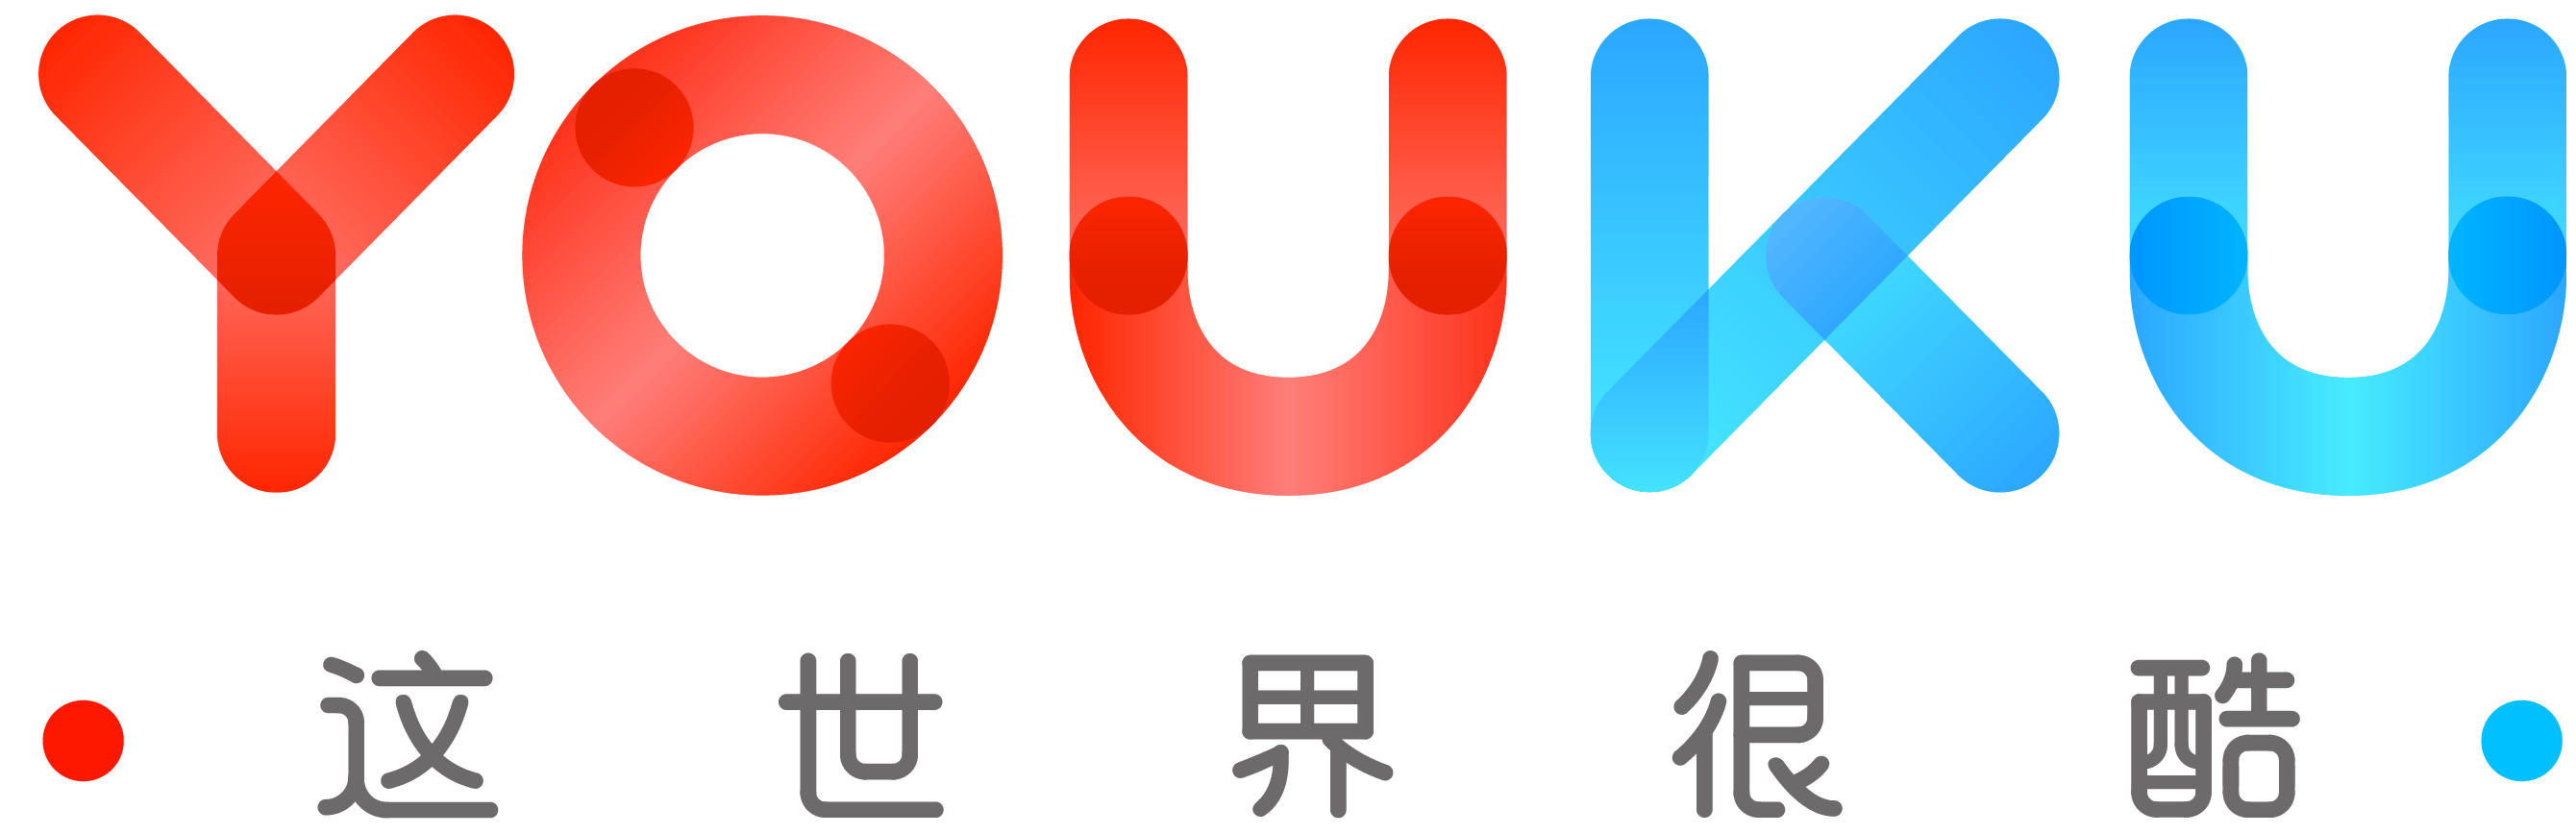 Youku Logo - Youku png.png